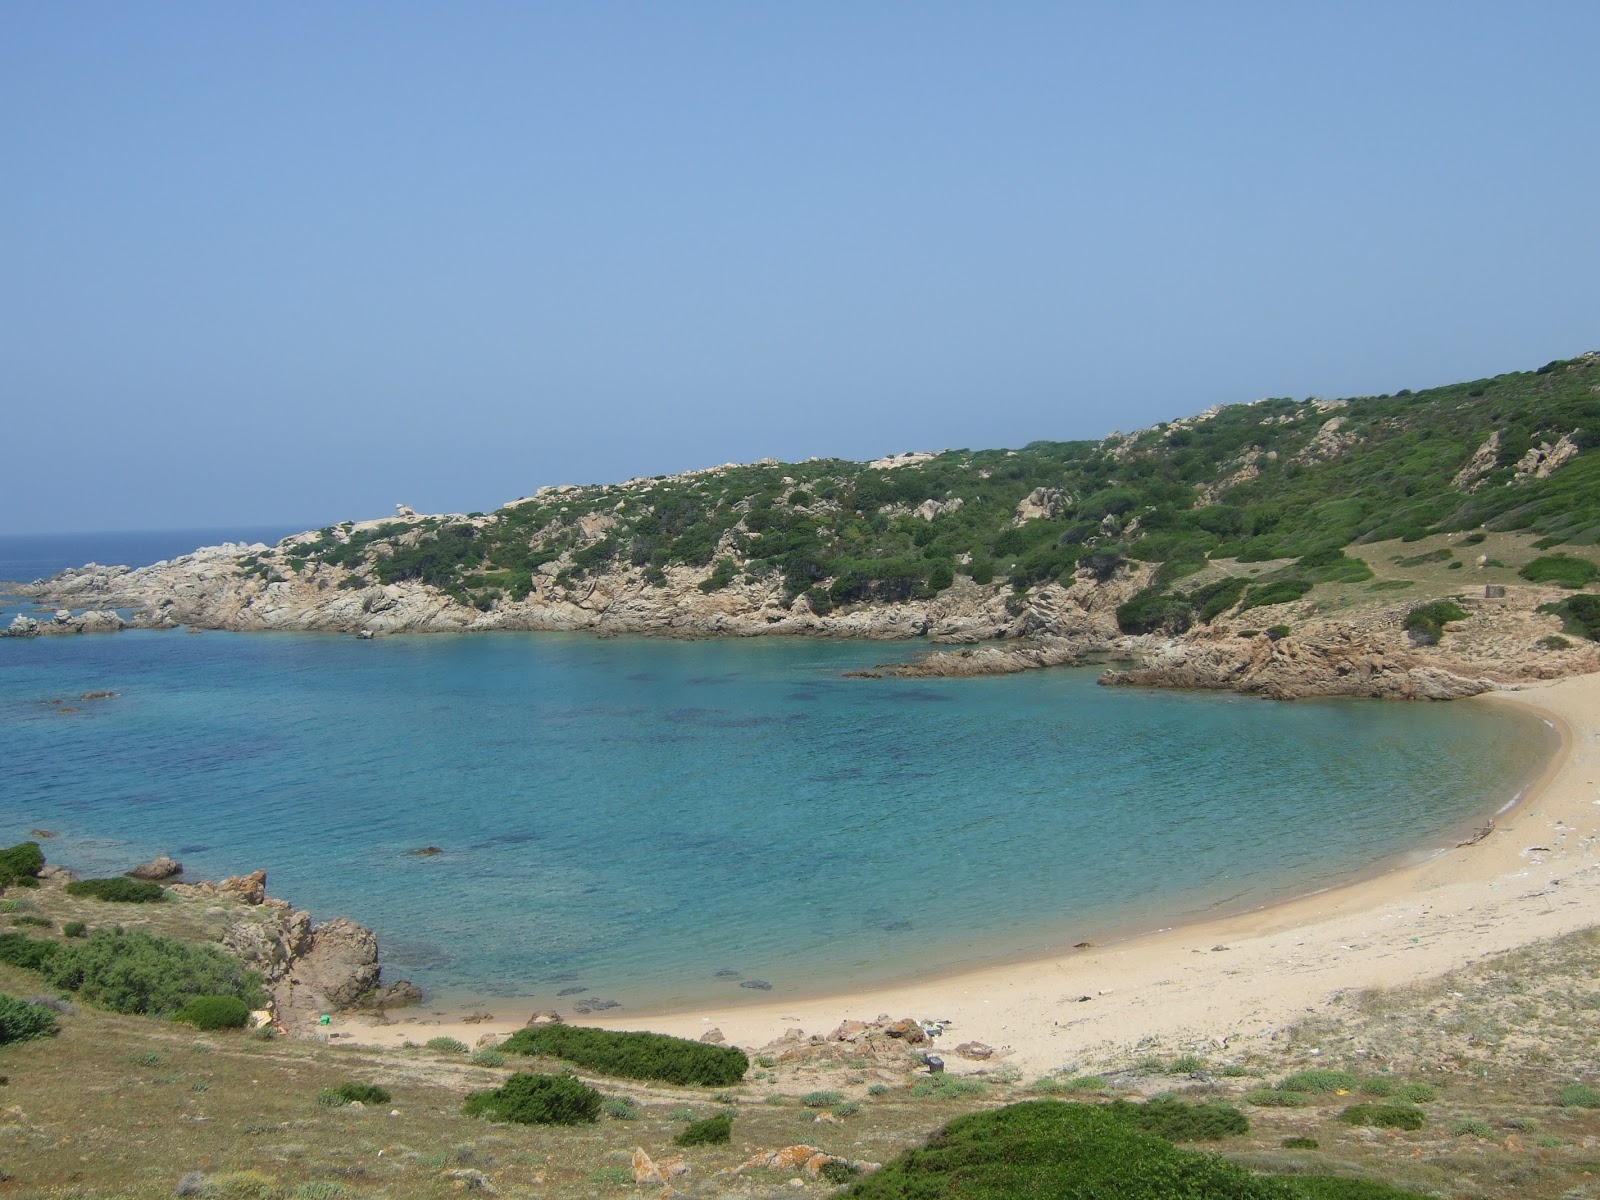 Fotografija Spiaggia La Niculina nahaja se v naravnem okolju